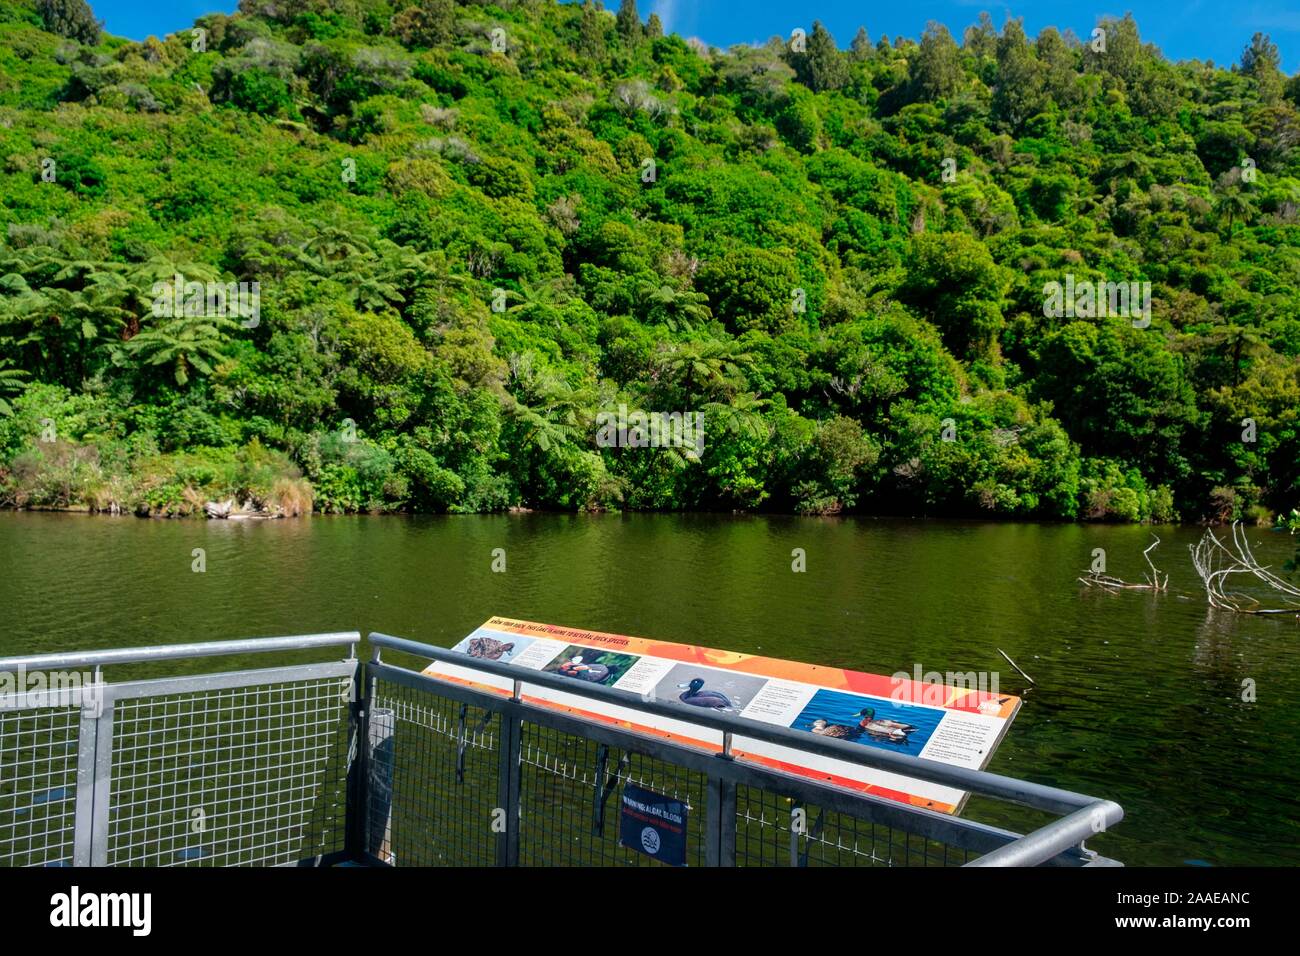 Untere Karori Reservoir in Zealandia, ein naturschutzprojekt und Attraktion ist der weltweit erste komplett eingezäunt urban Eco Heiligtum von 225 HA, Wellington, Neuseeland Stockfoto